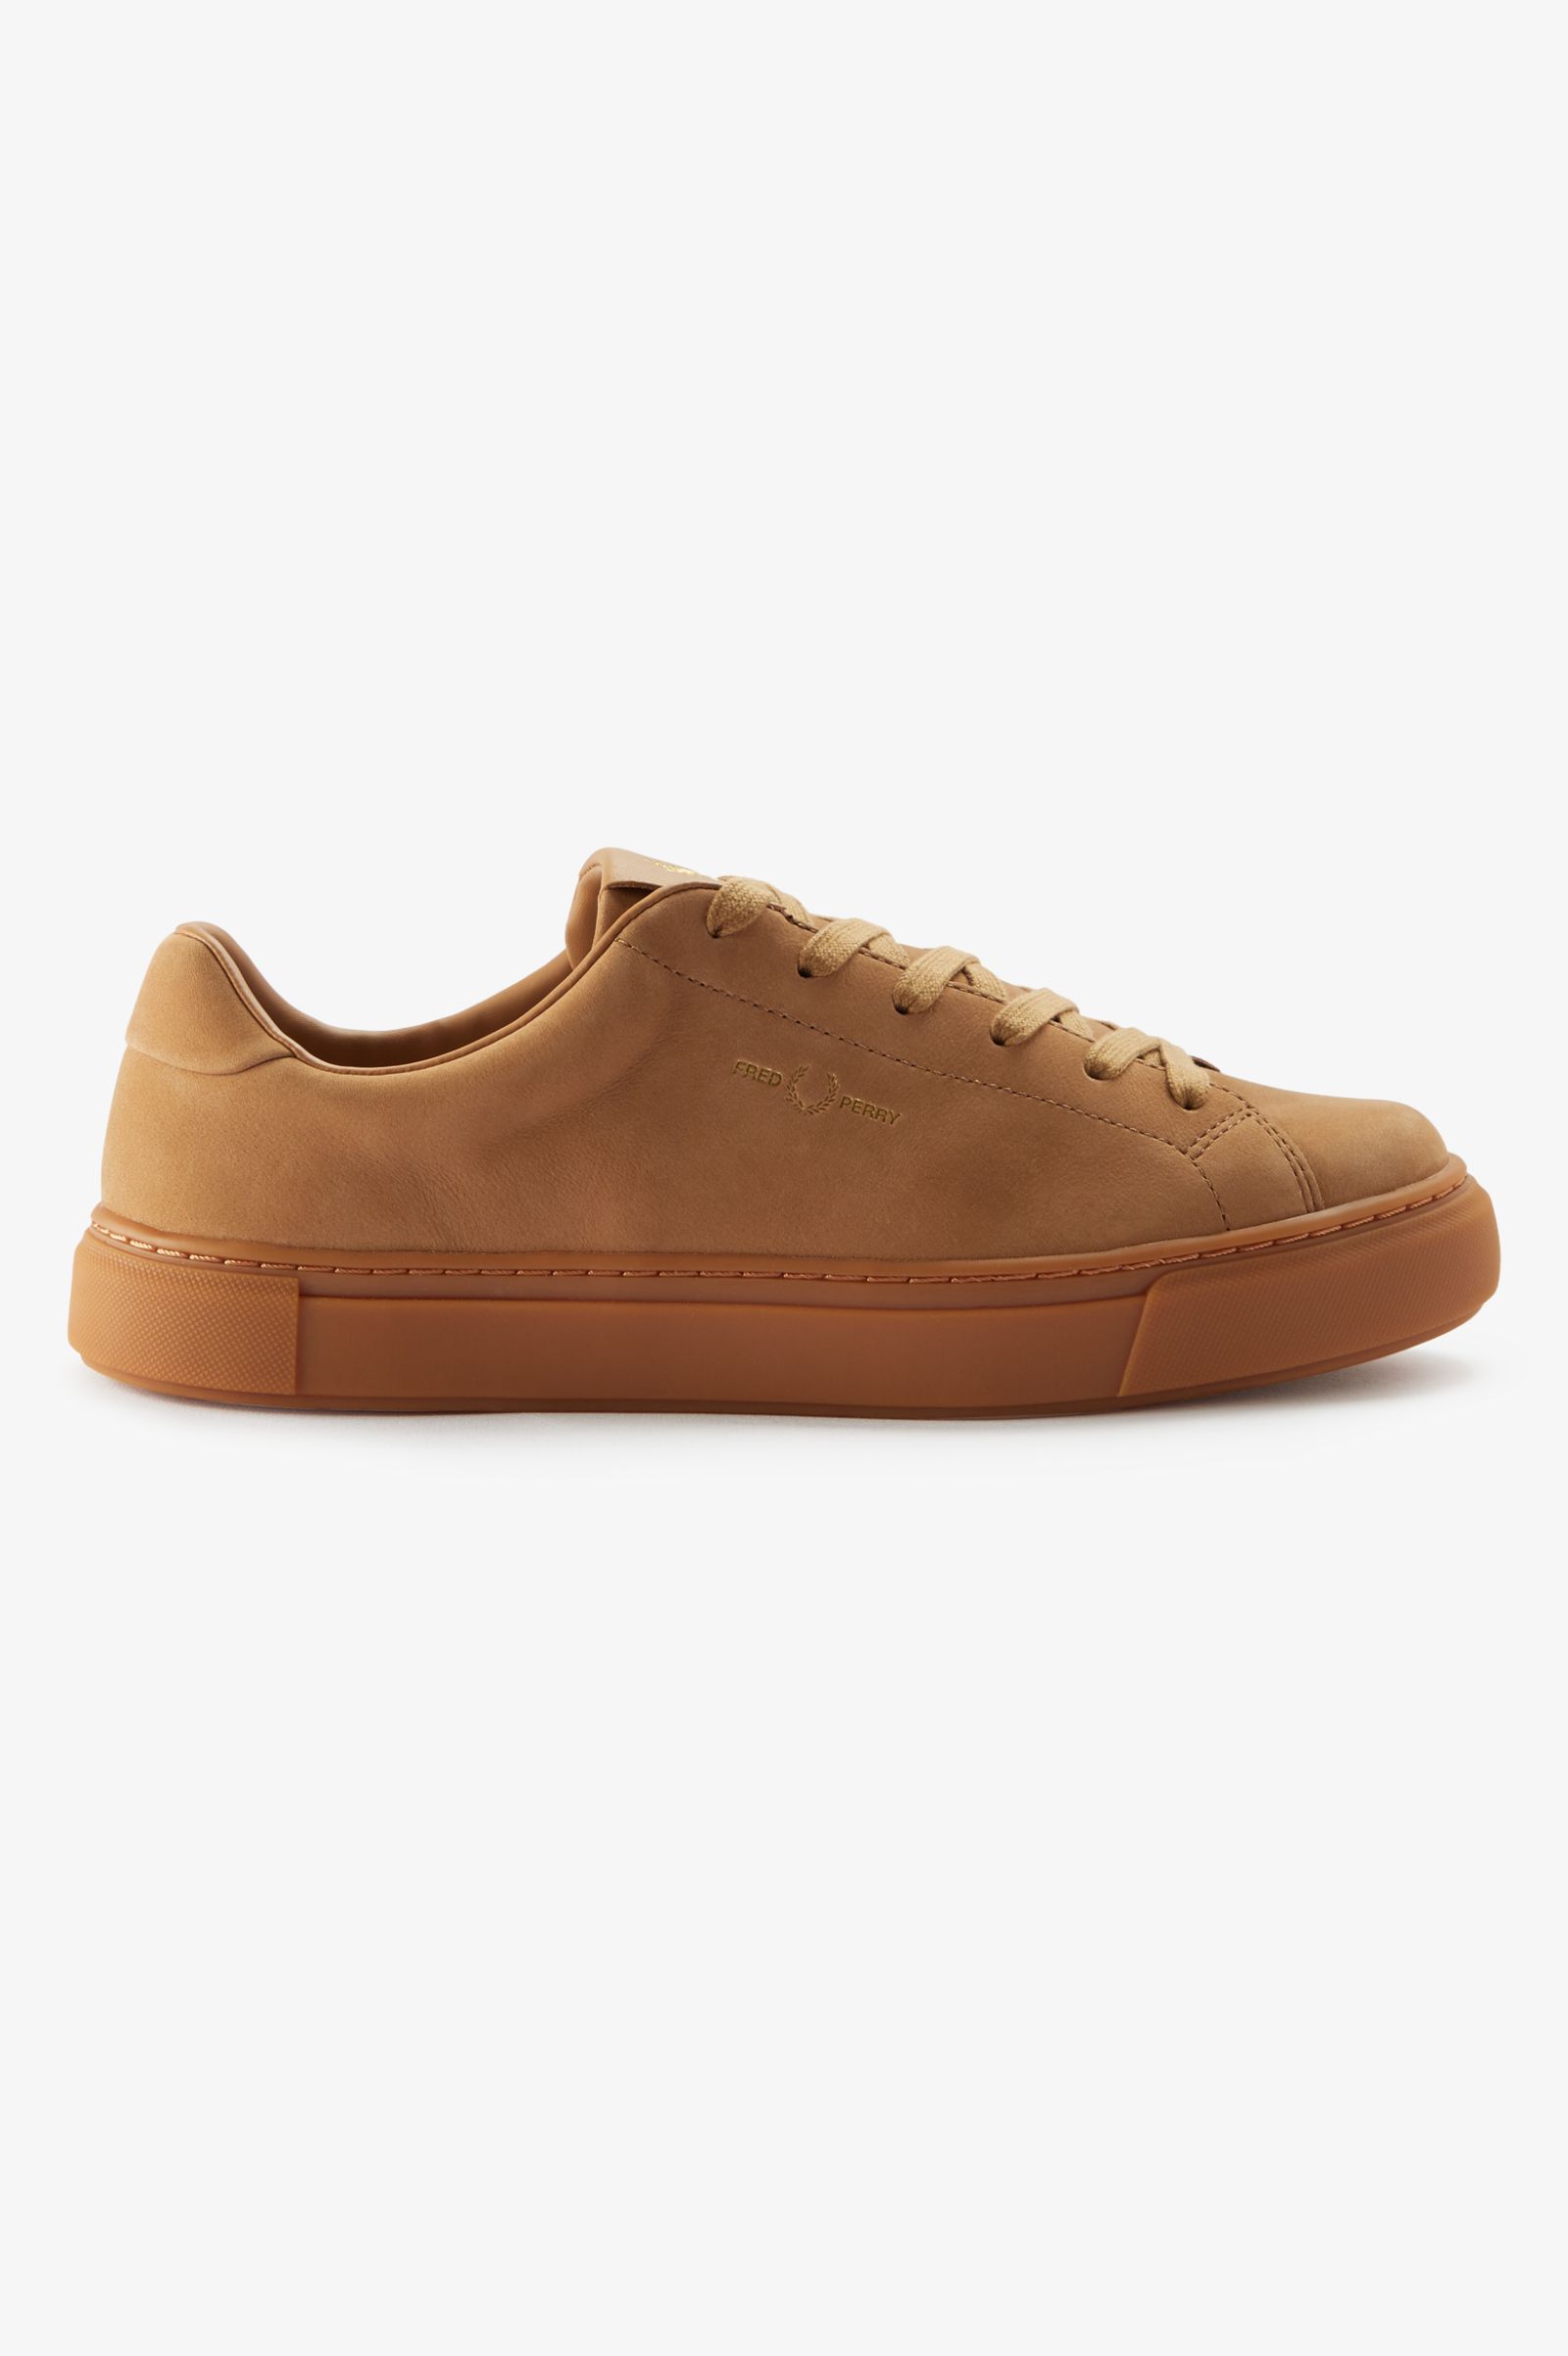 B71 - Copper / Gold | Men's Footwear | Boots, Loafers & Designer ...